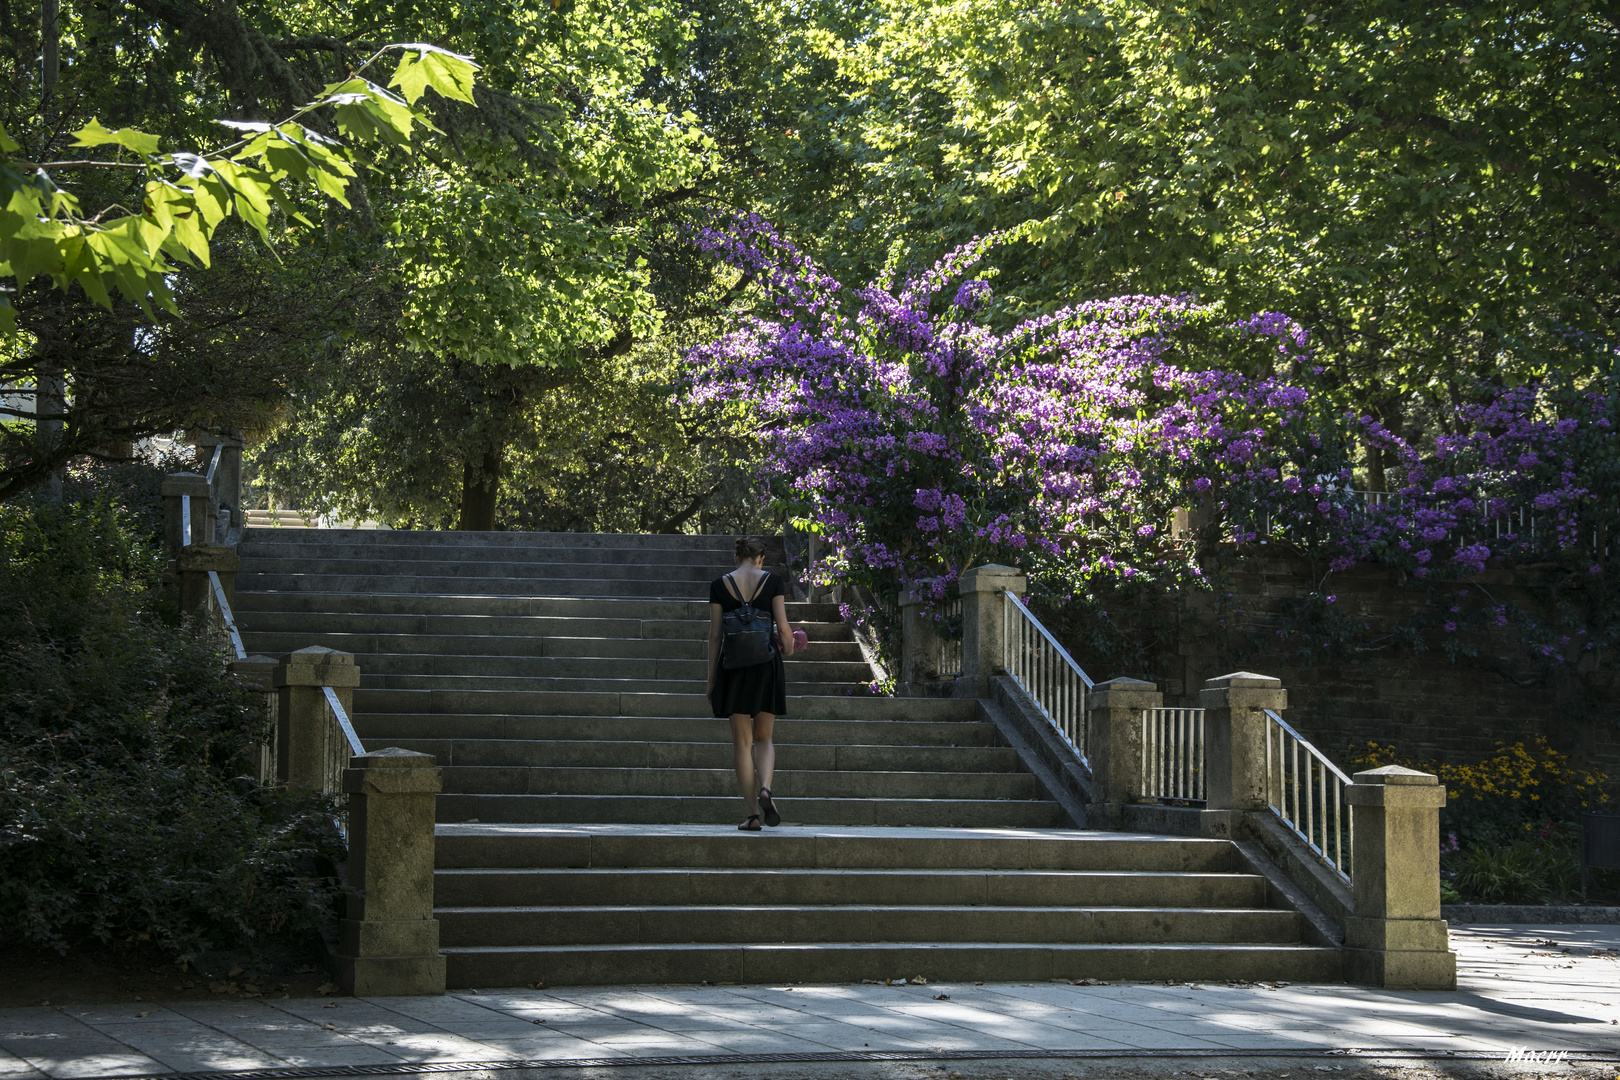 Escalinata con la bugambilia que florece cada año